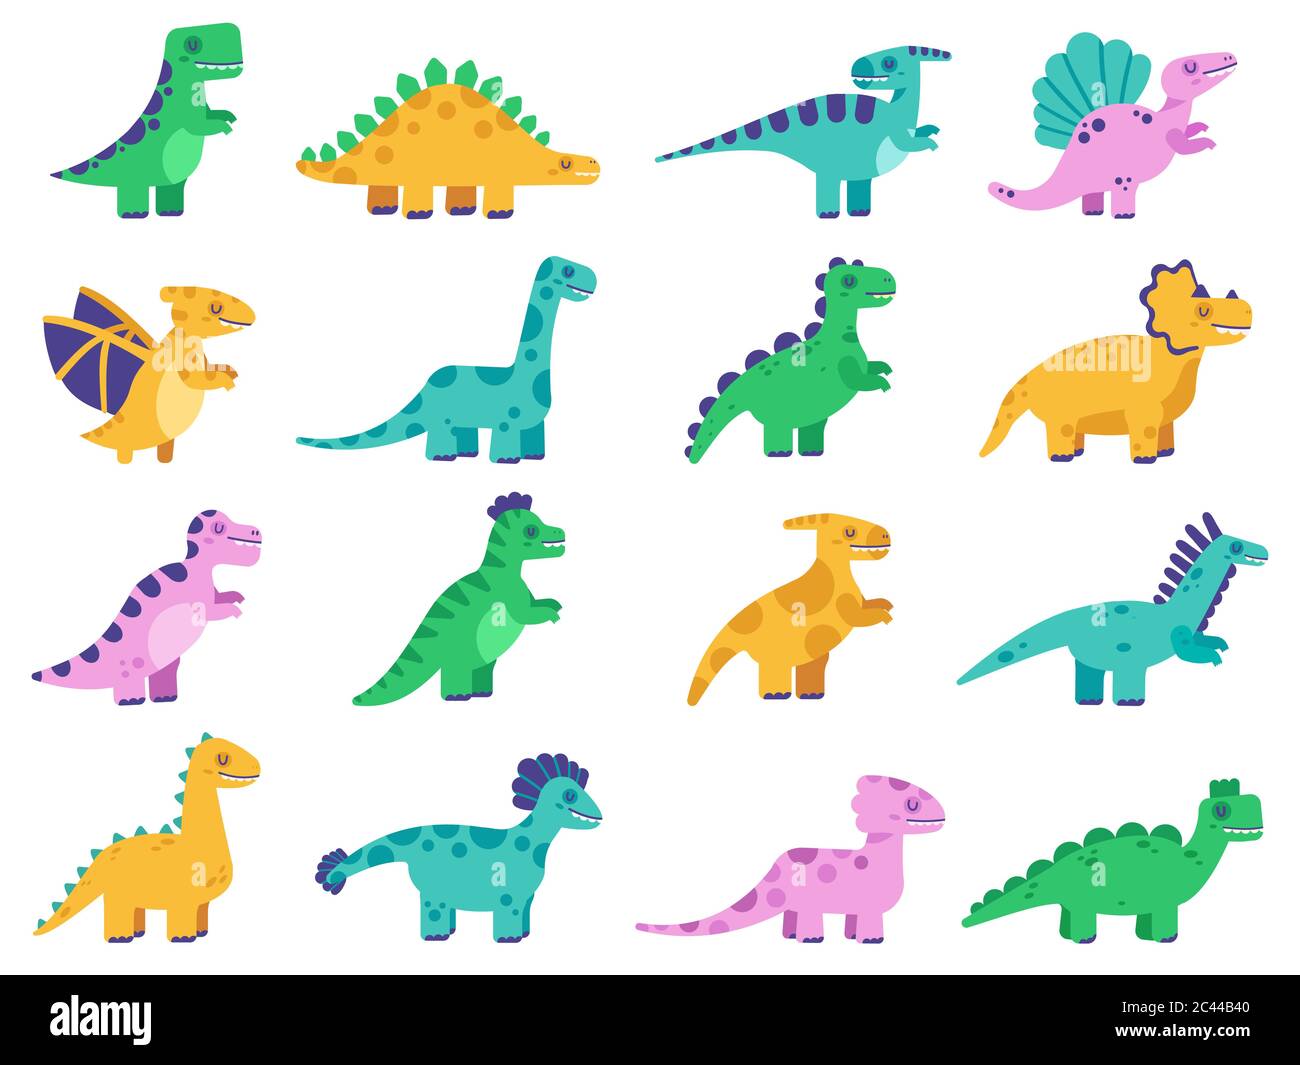 Graziosi dinosauri. Dinosauri fumetti disegnati a mano, personaggi divertenti del dinosauro, tirannosauro, stegosauro e diplodocus insieme di illustrazioni vettoriali isolate Illustrazione Vettoriale